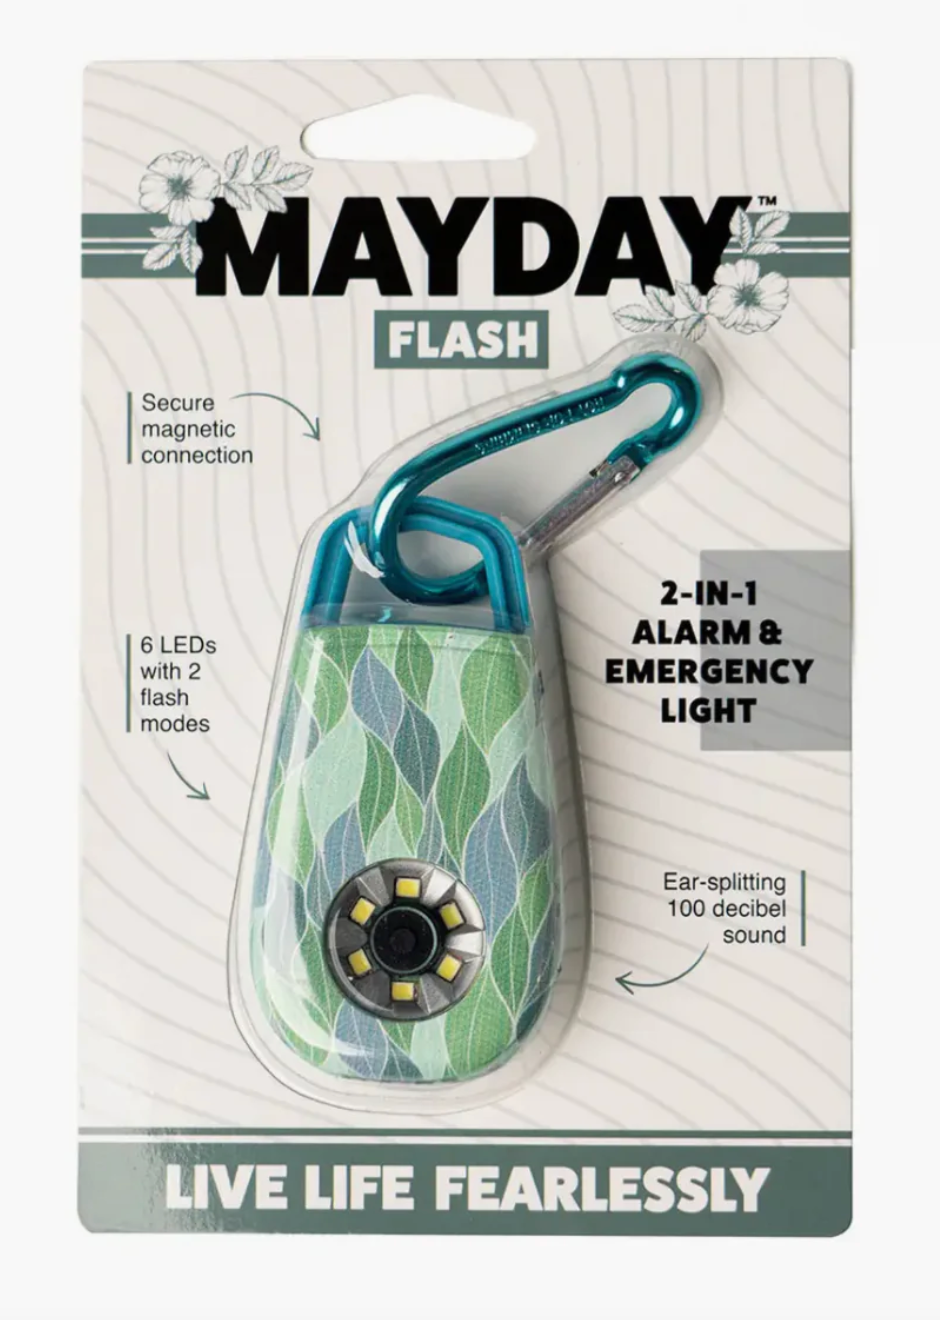 MAYDAY Flash 2-IN-1 Alarm & Emergency Light